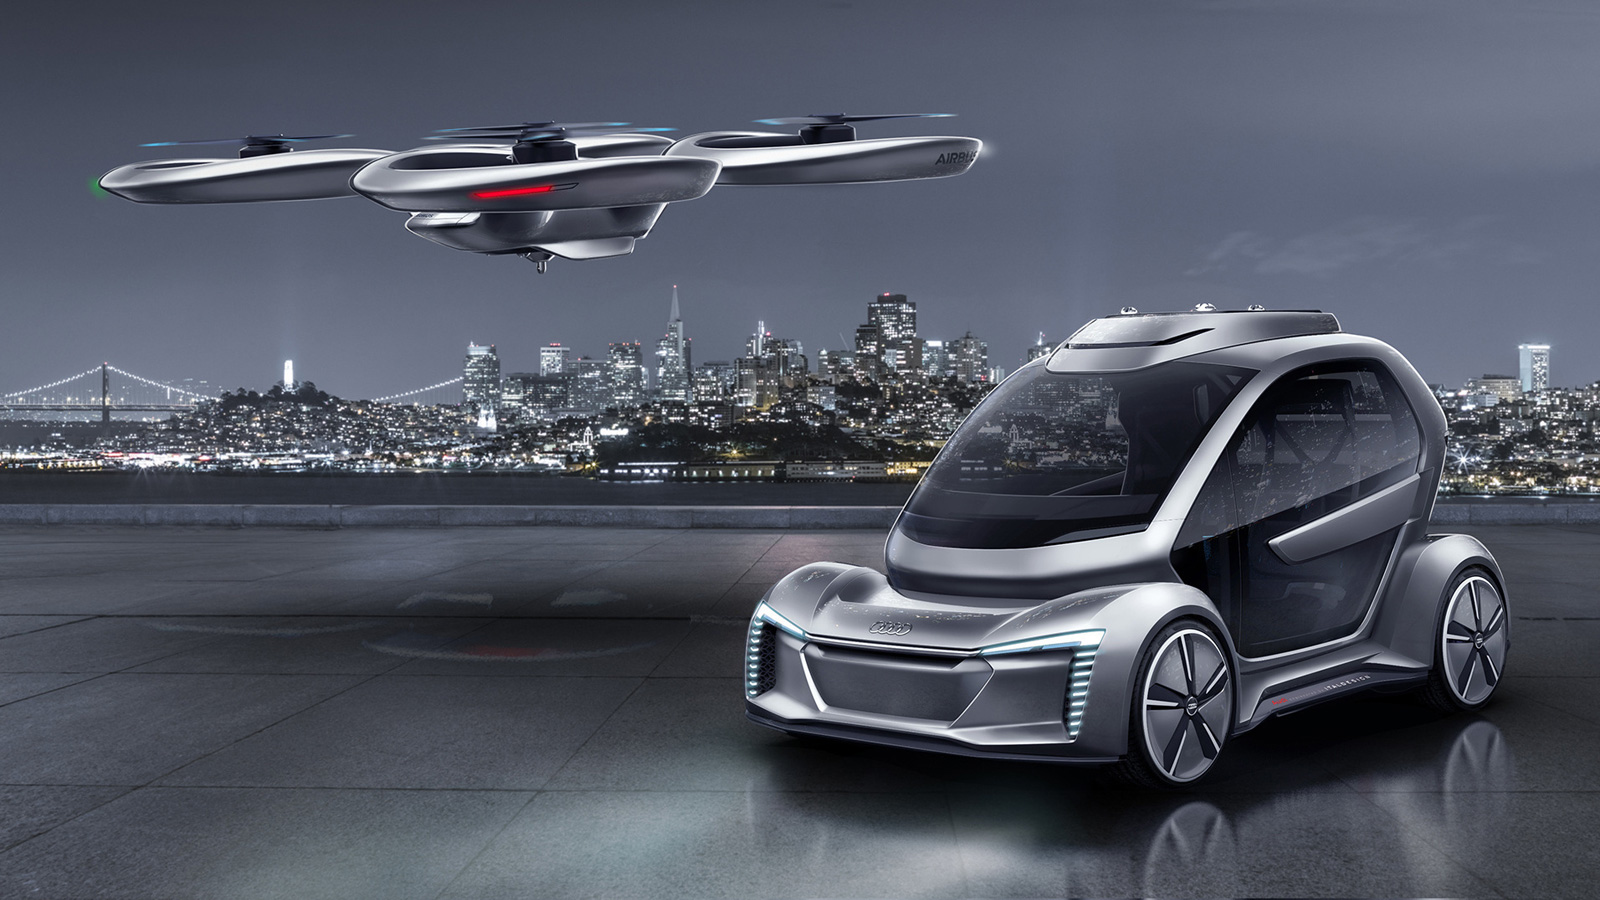 Audi et Italdesign revoient le design du taxi volant d'Airbus